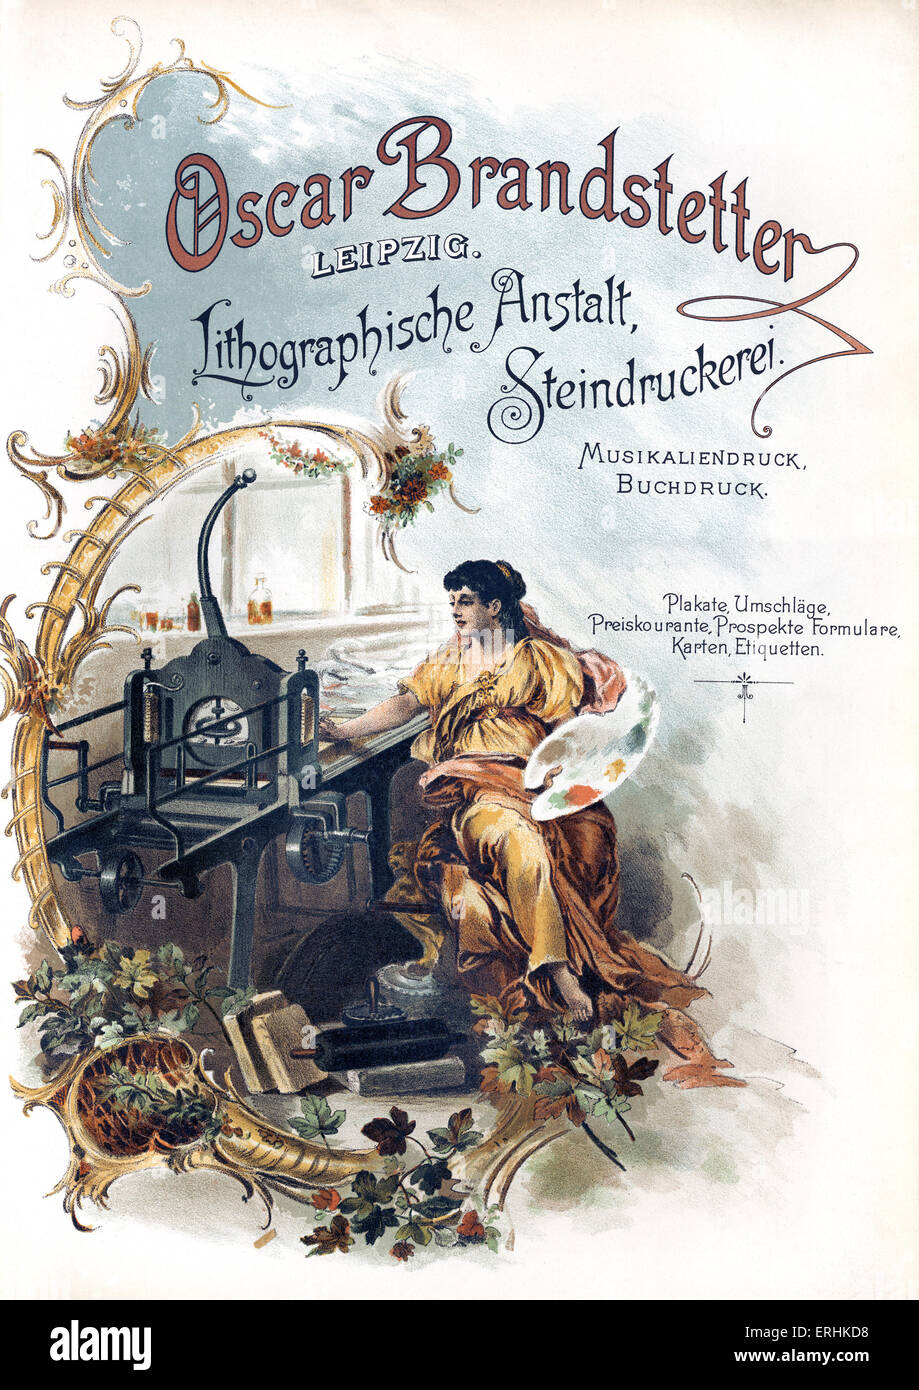 Oscar Branstetter lavori di stampa pubblicitaria - dal 1902 catalogo. Lavori di stampa in Leipzig. Annuncio mostra fabbrica con Foto Stock